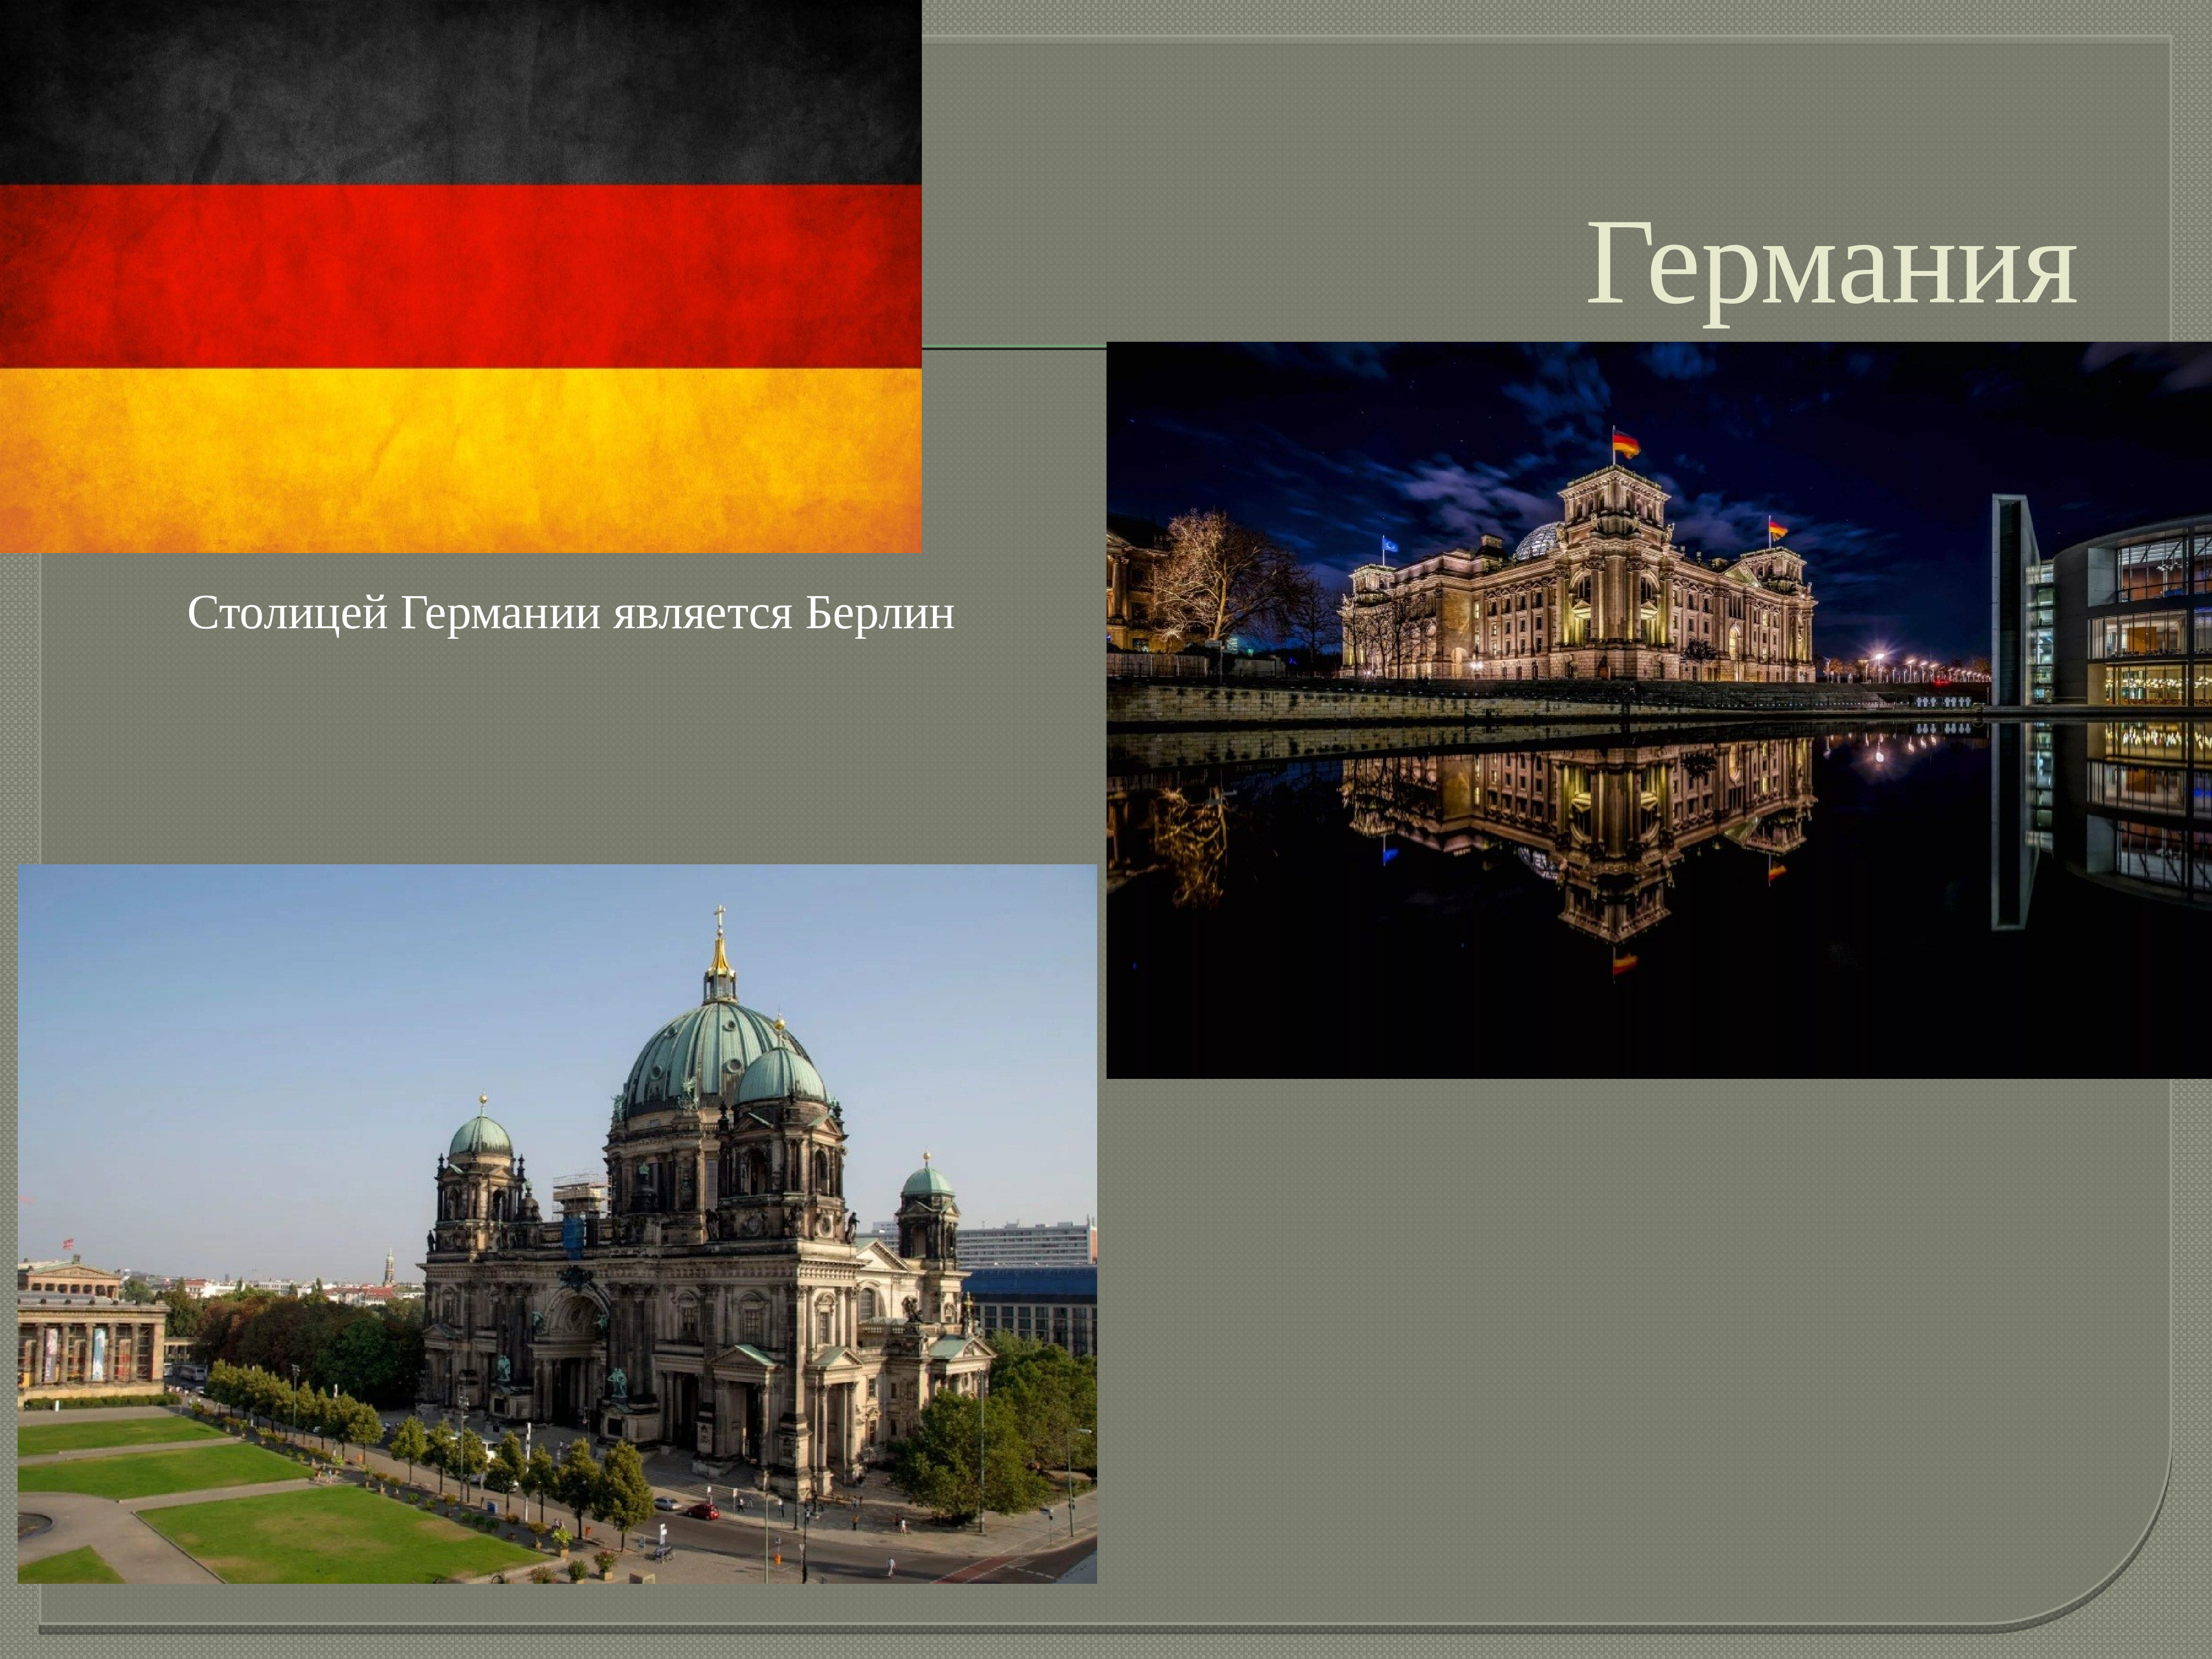 достопримечательности германии фото с названиями на русском языке